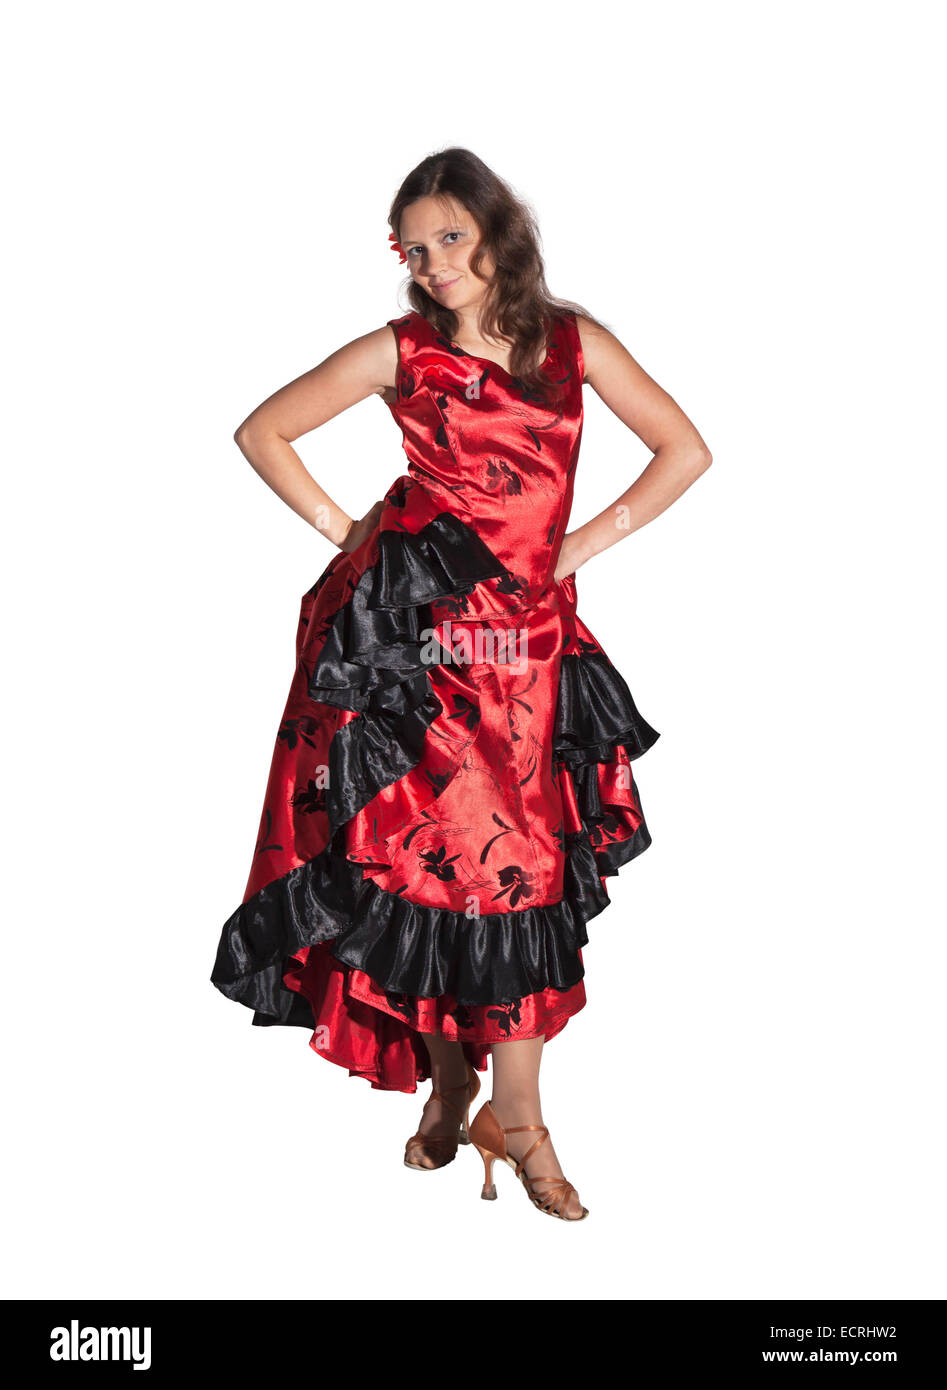 Jeune femme à danser le flamenco, studio shot, fond blanc Banque D'Images